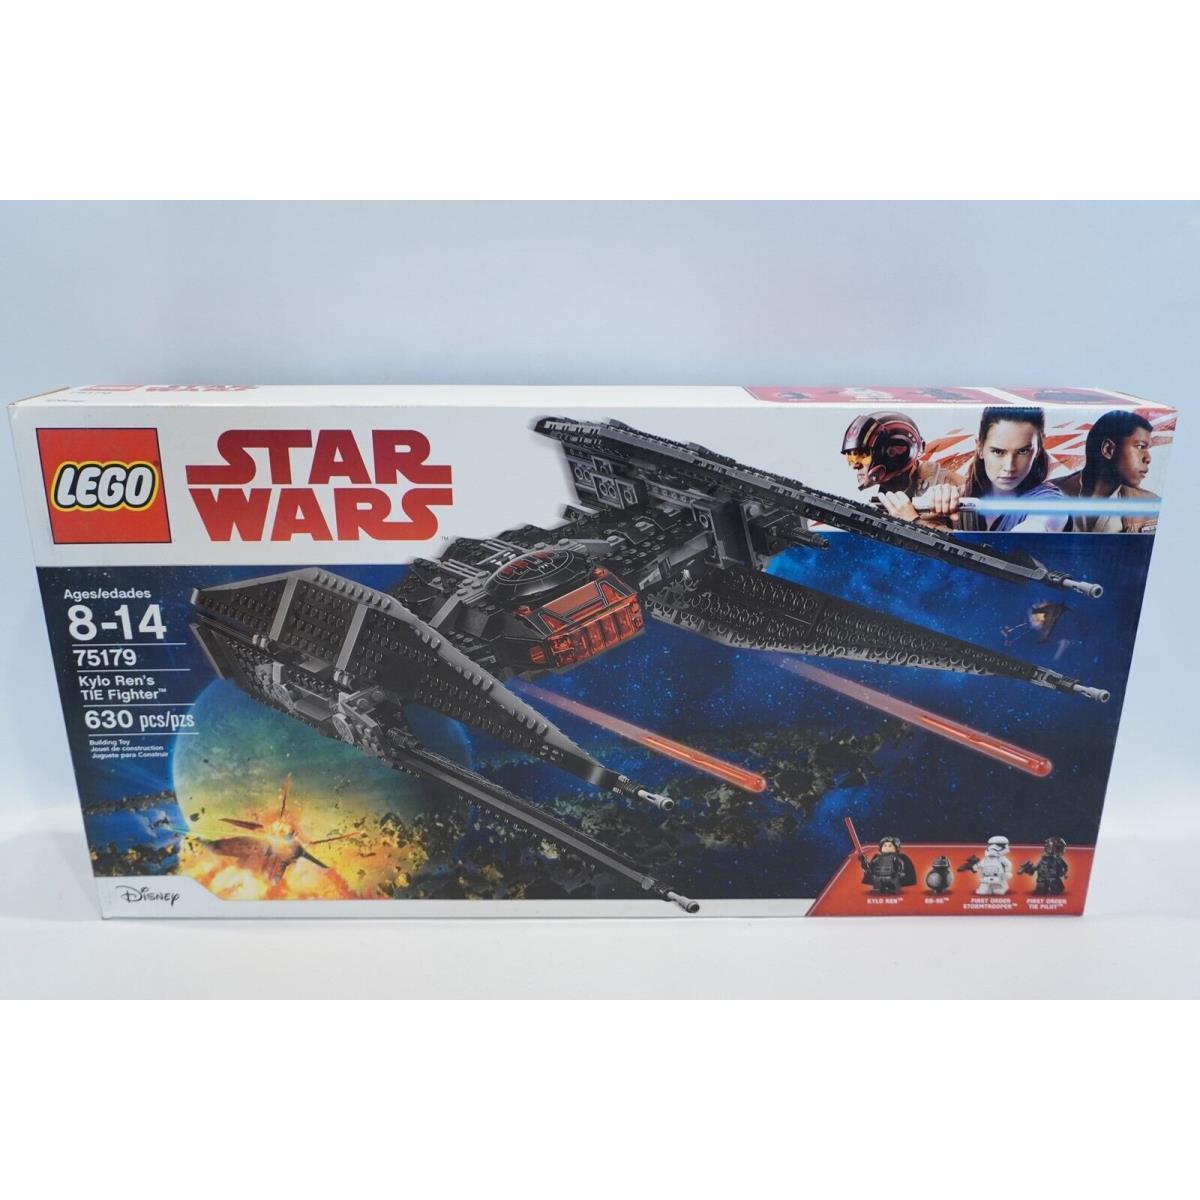 Lego Star Wars 75179 Kylo Ren`s Tie Fighter Retired Set